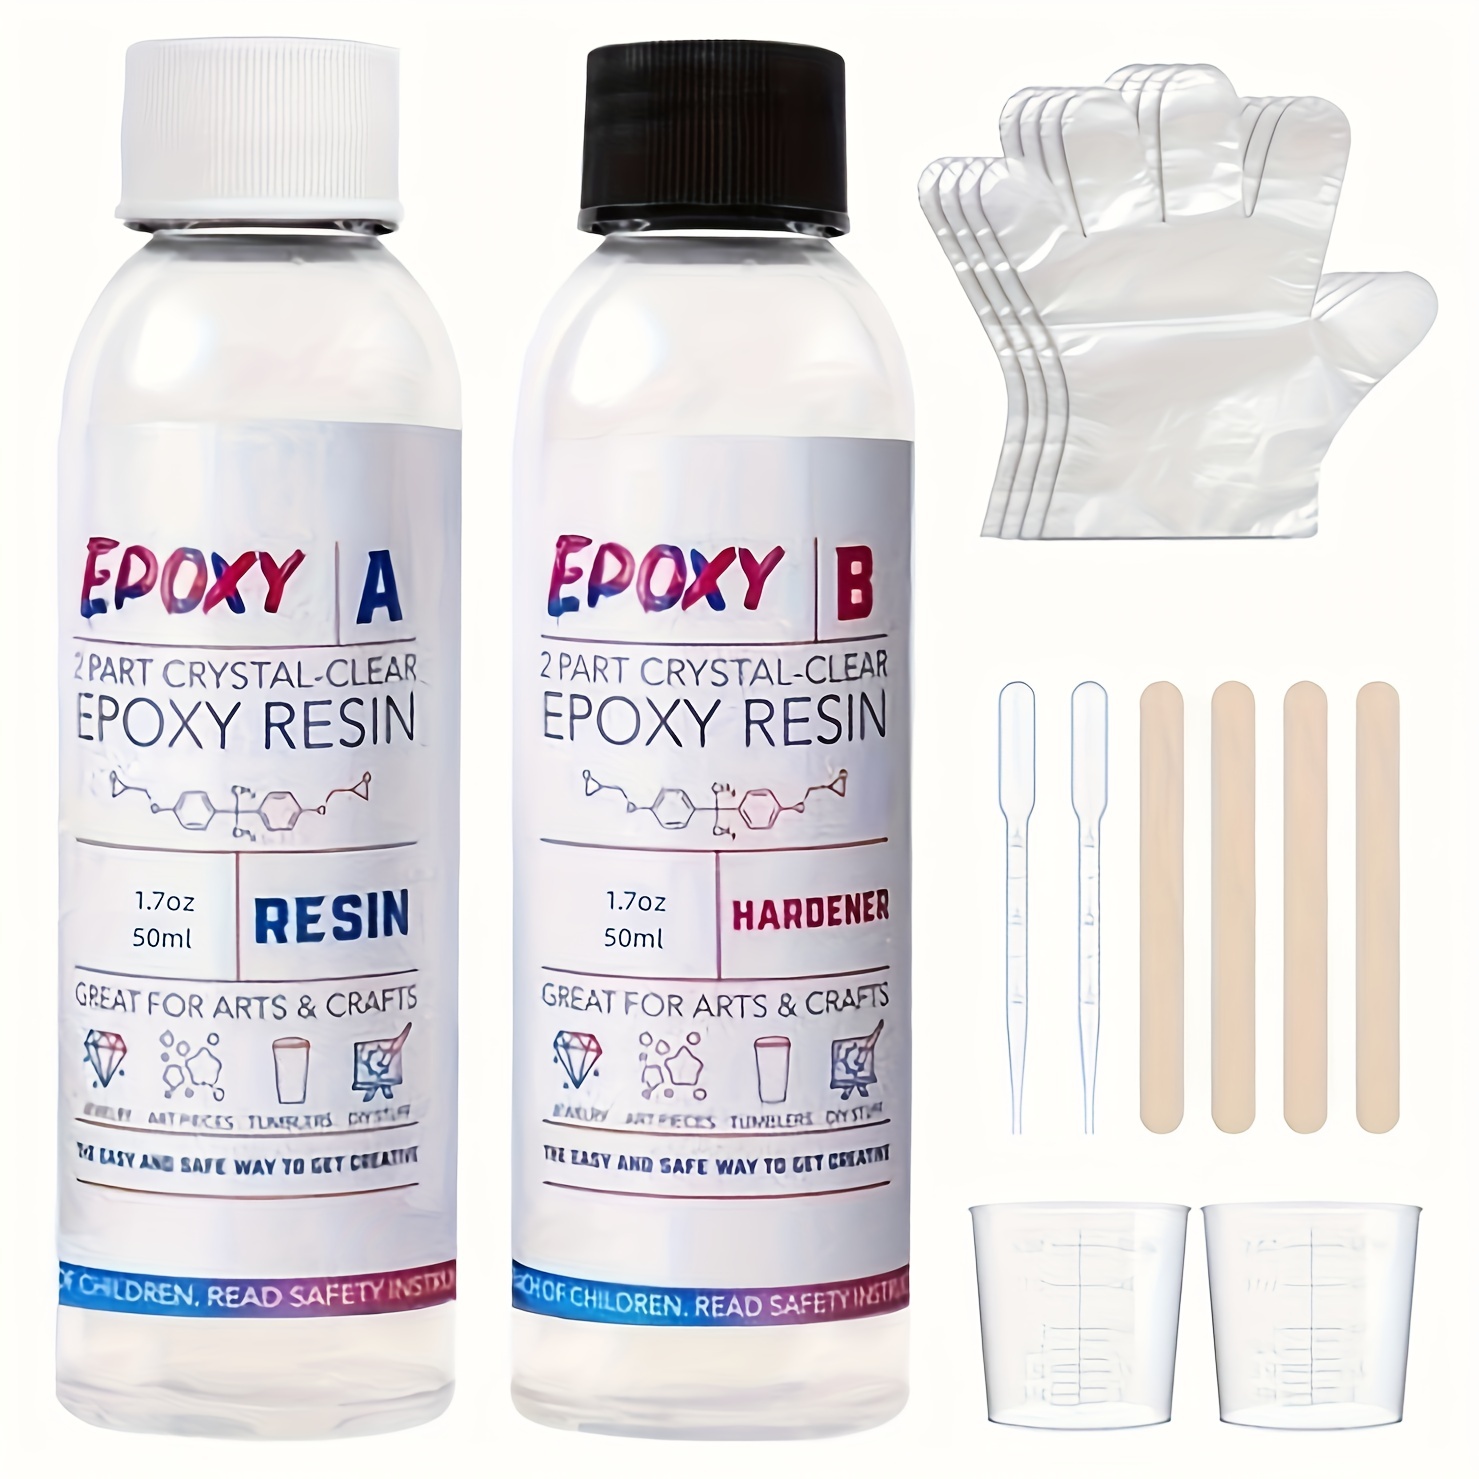 Résine époxy fournit des accessoires de résine pour la fabrication